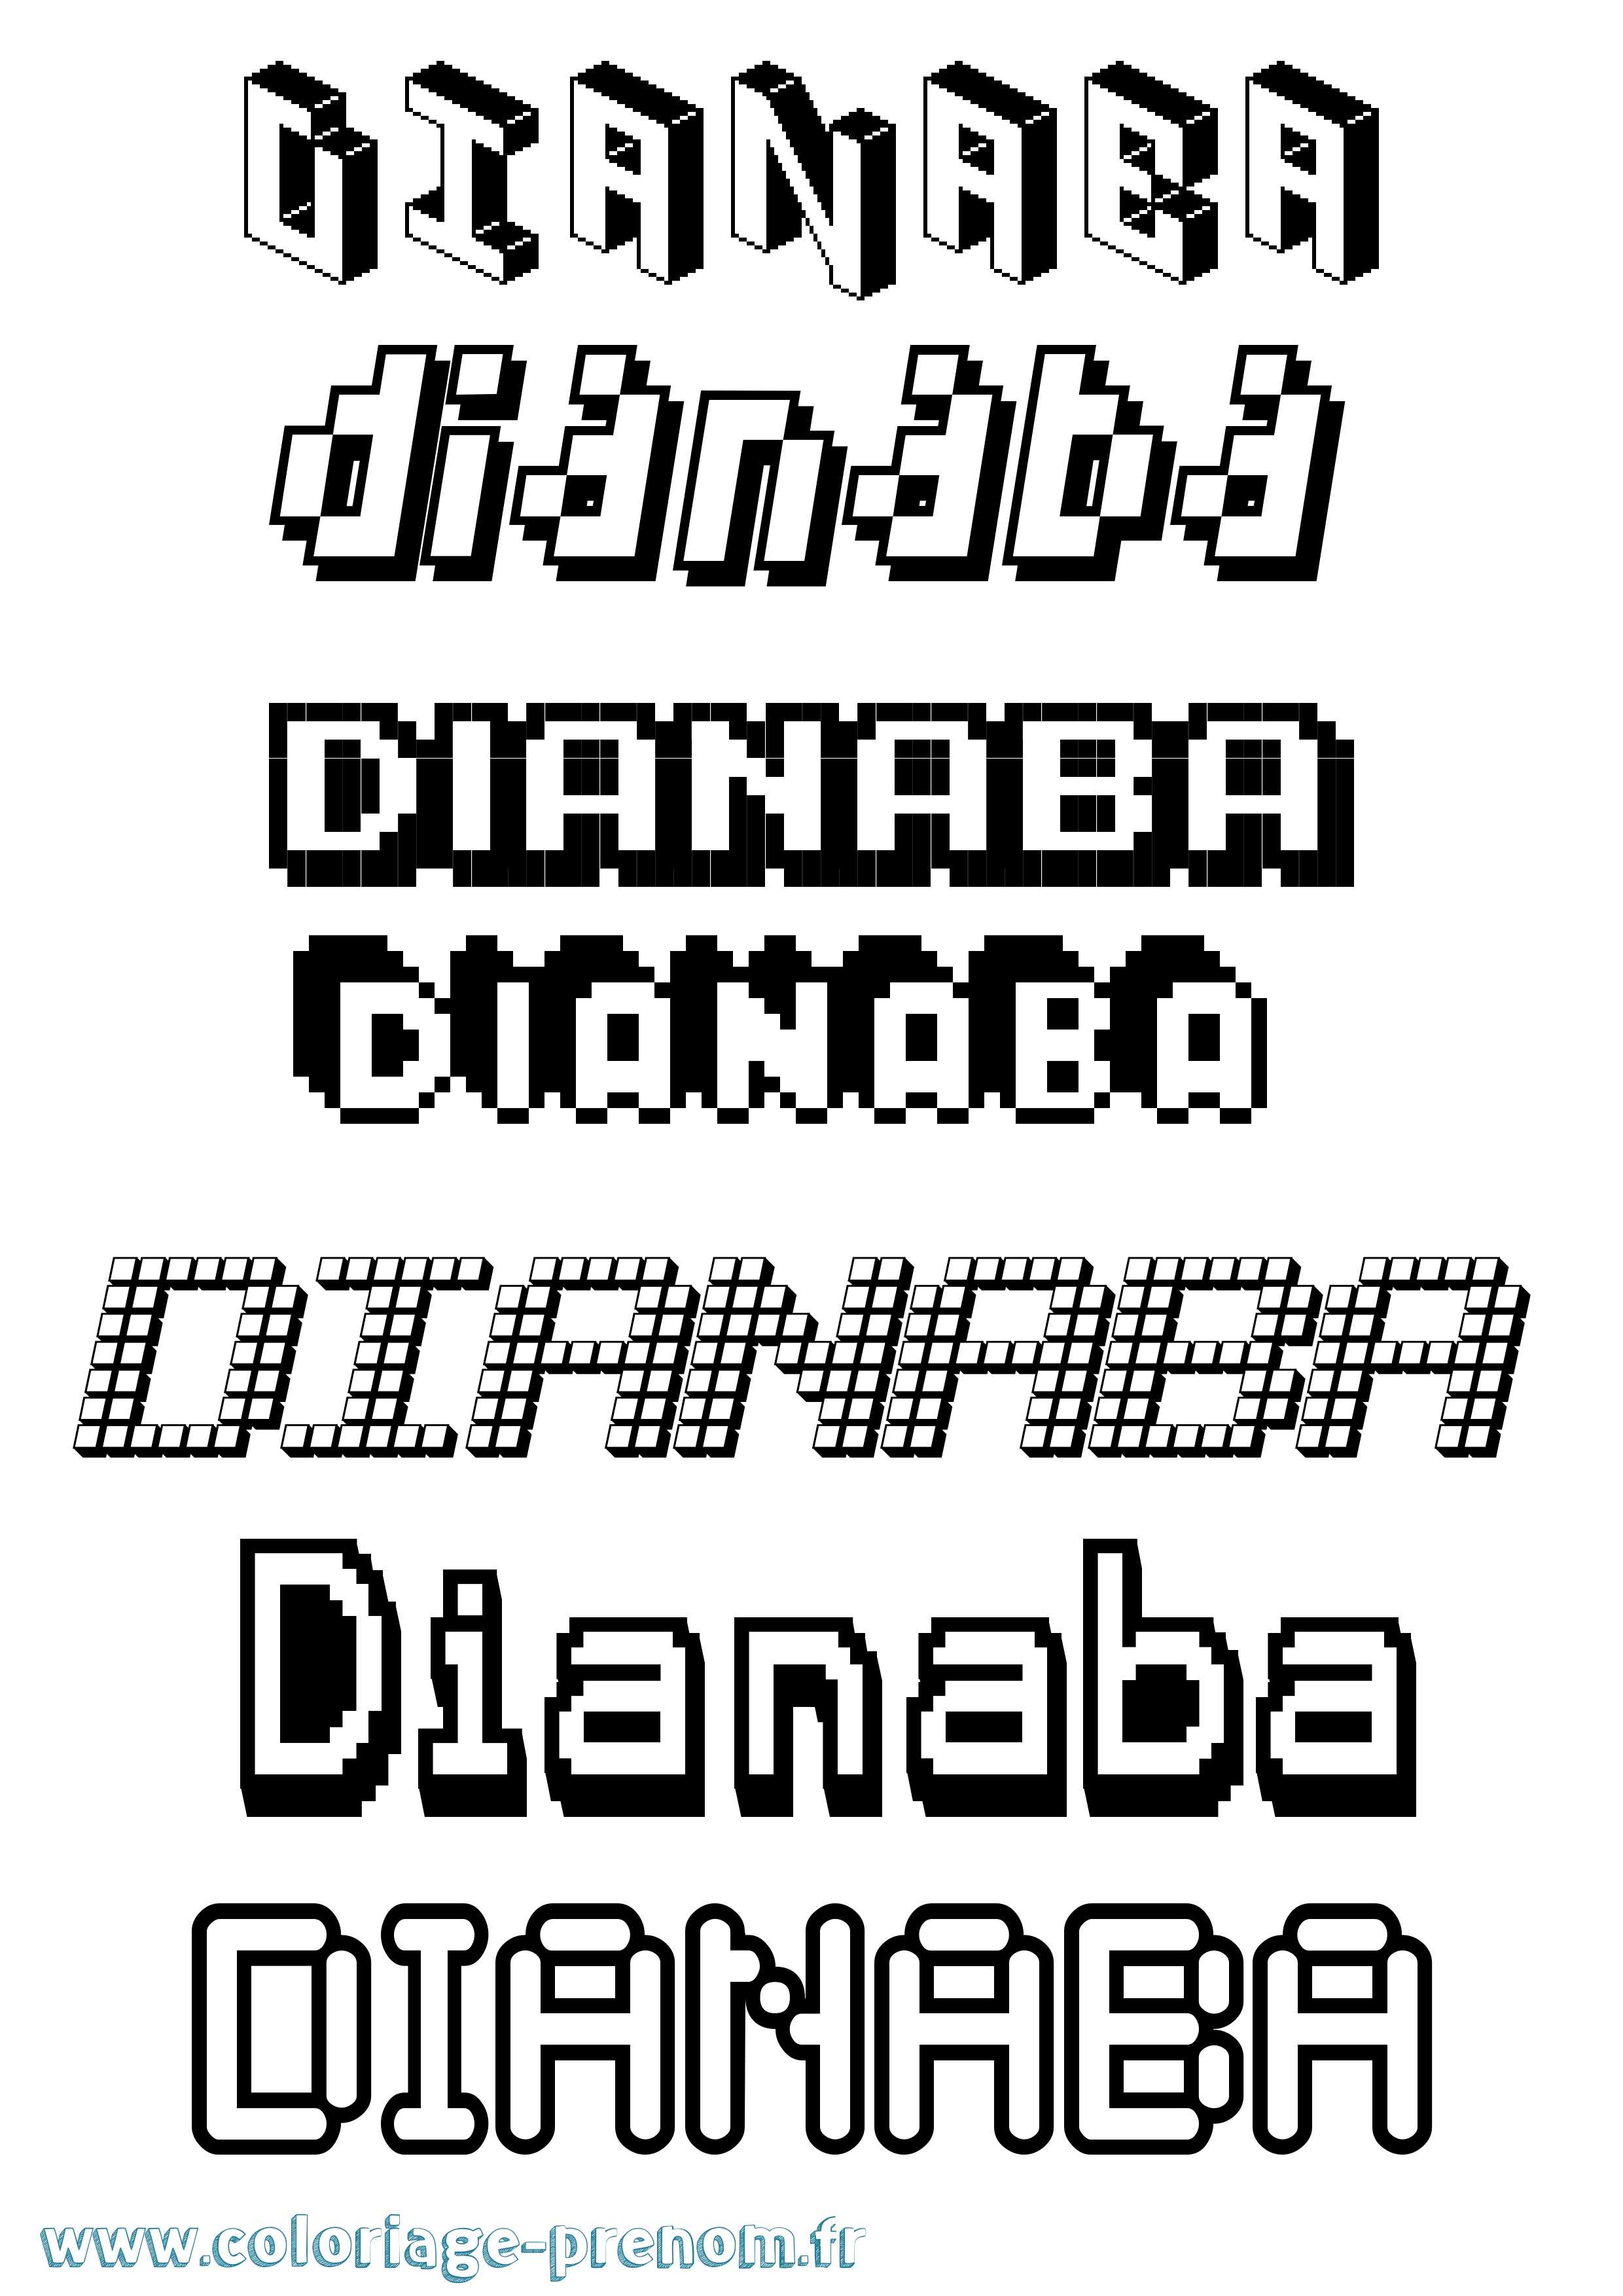 Coloriage prénom Dianaba Pixel